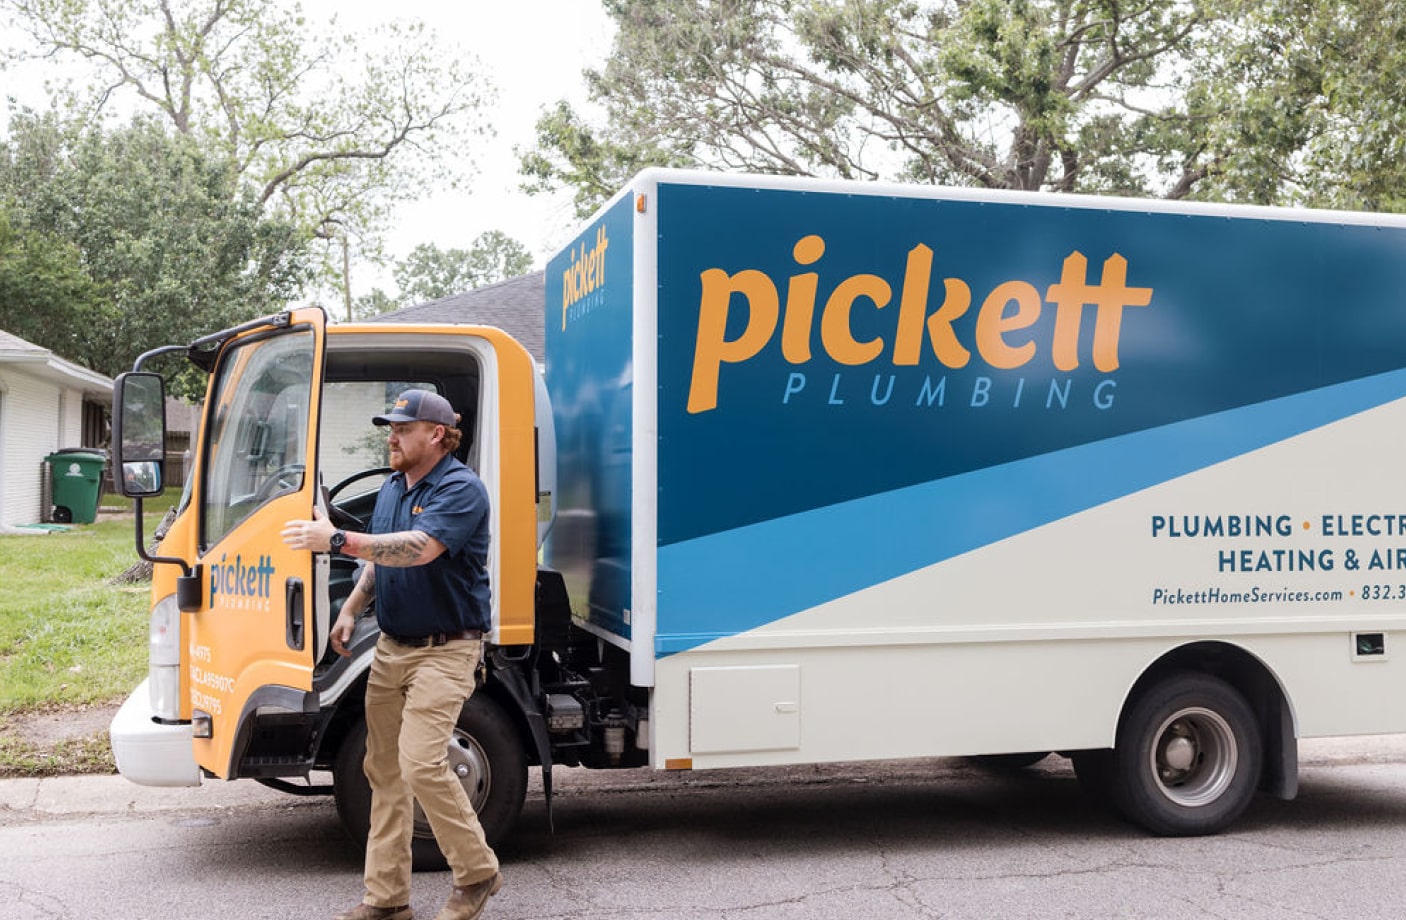 Technician next to Pickett truck in Houston, Texas.